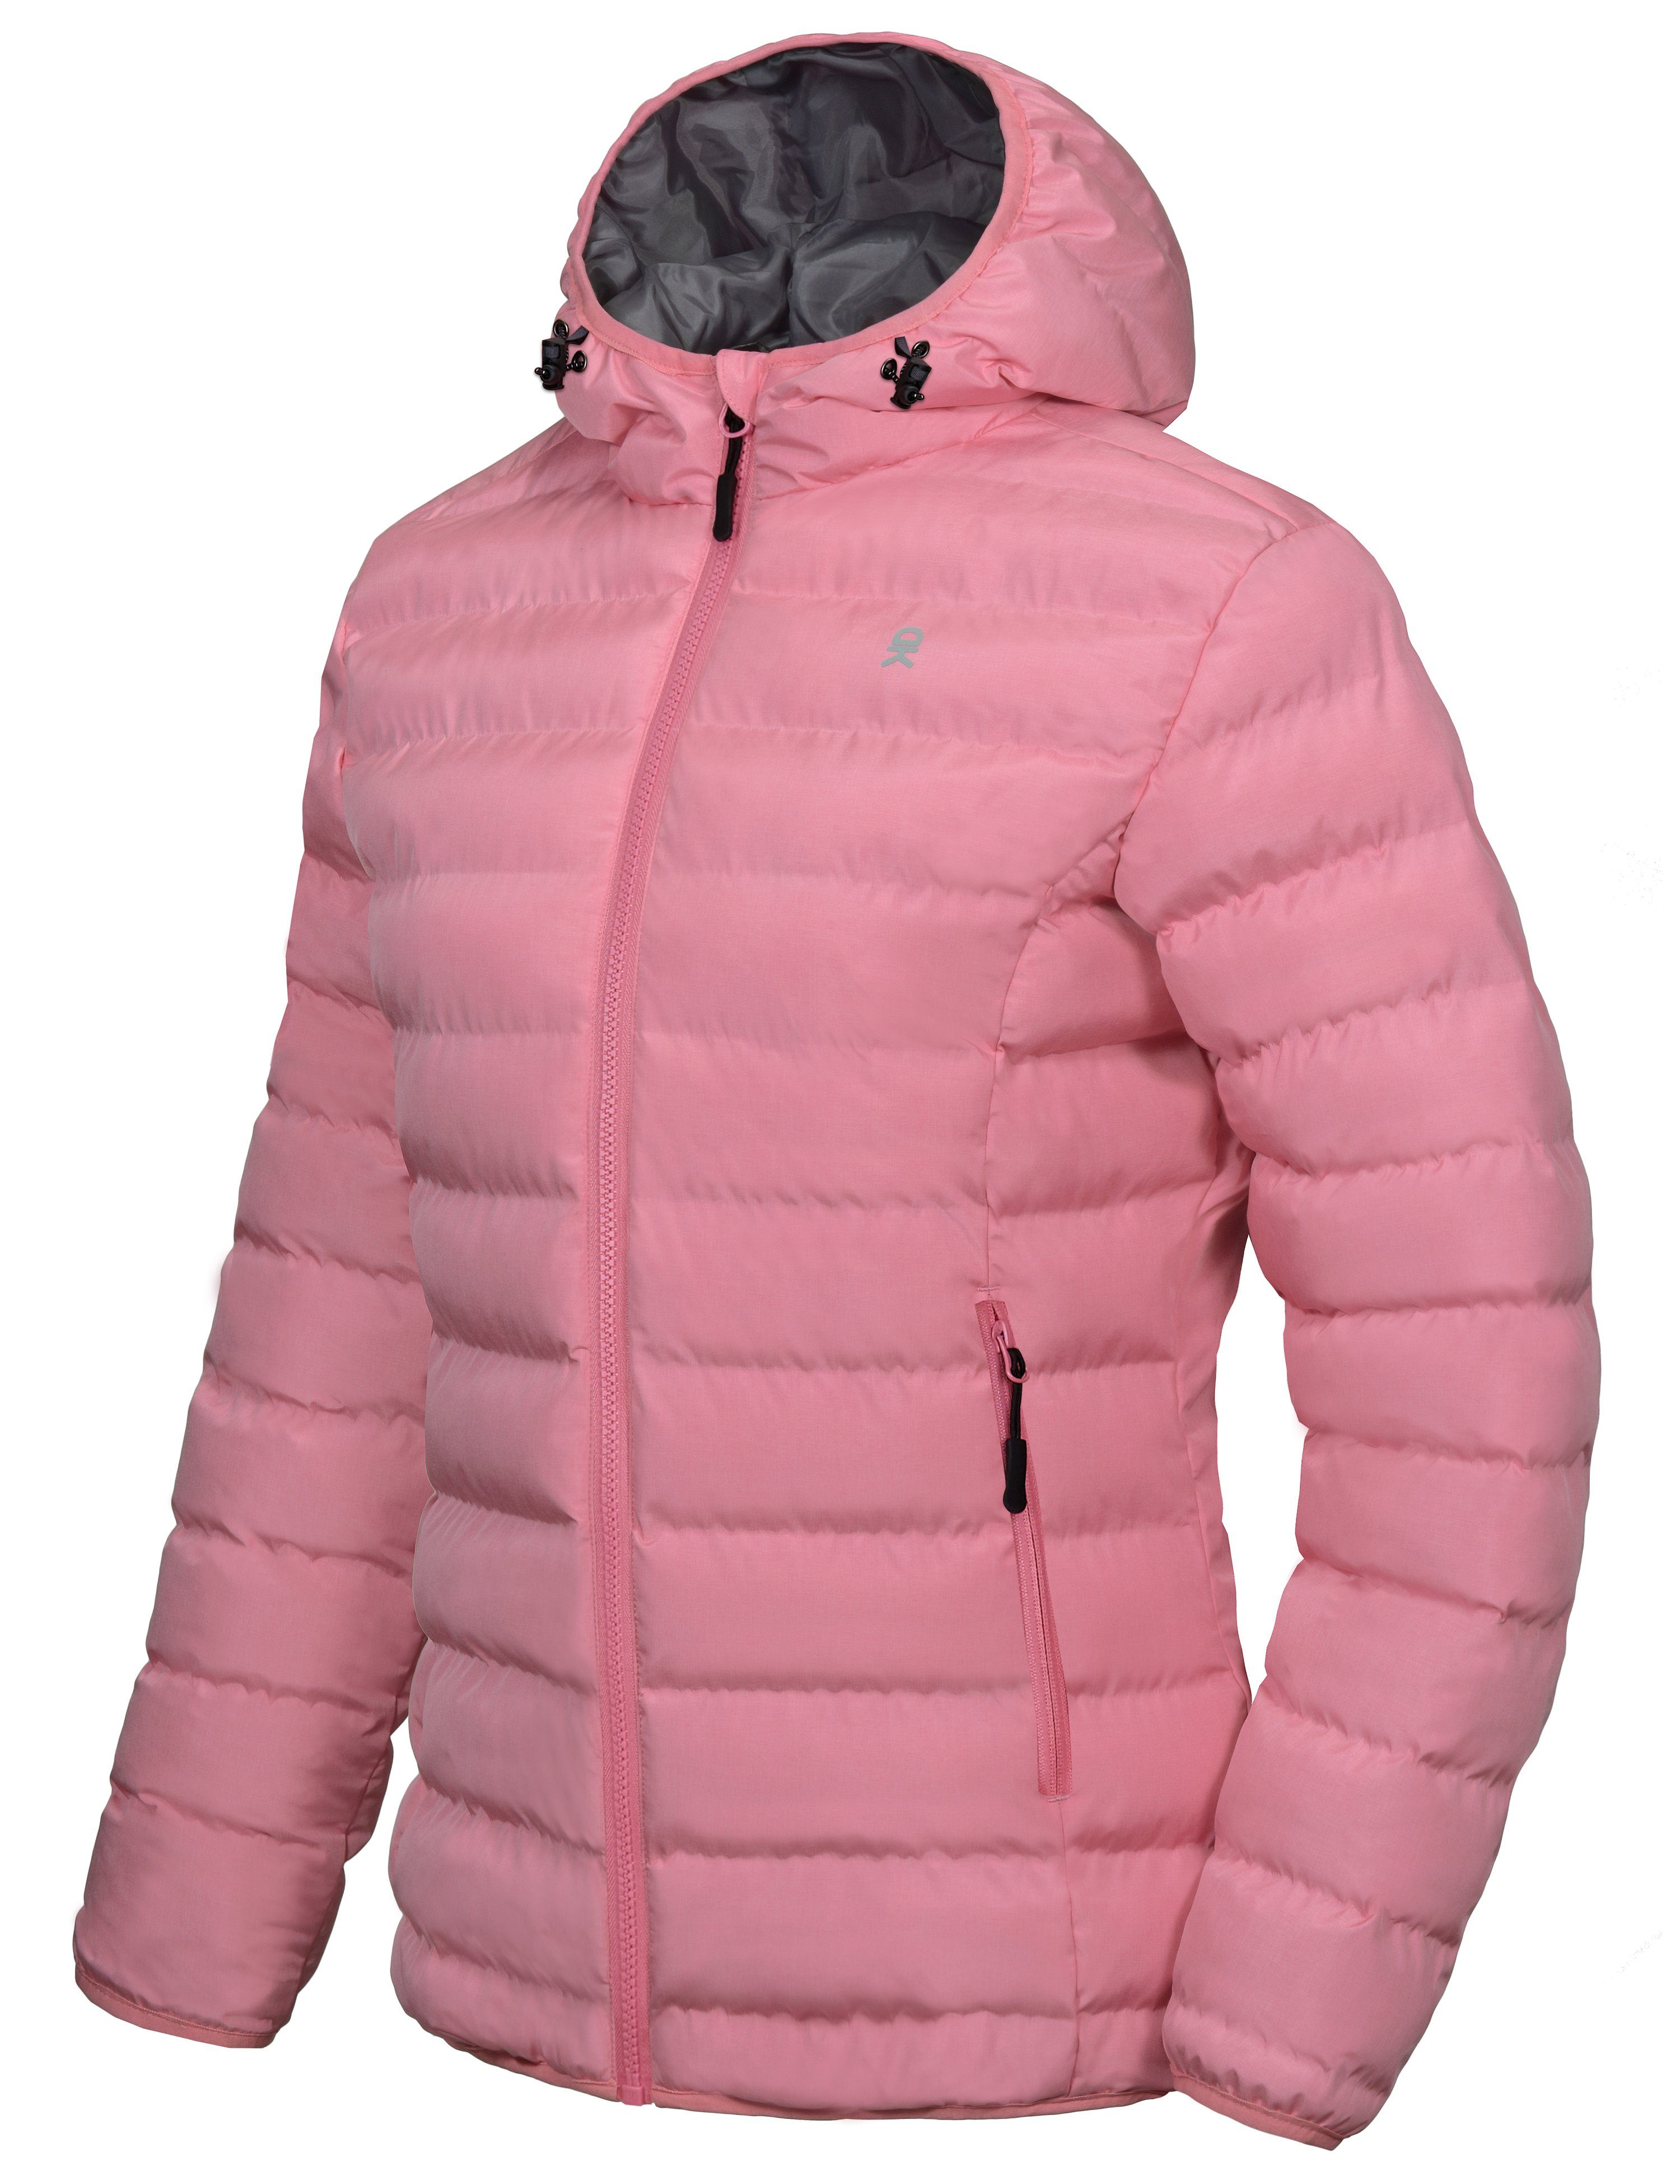 Women's Warm Waterproof Hooded Puffer Jacket – Little Donkey Andy